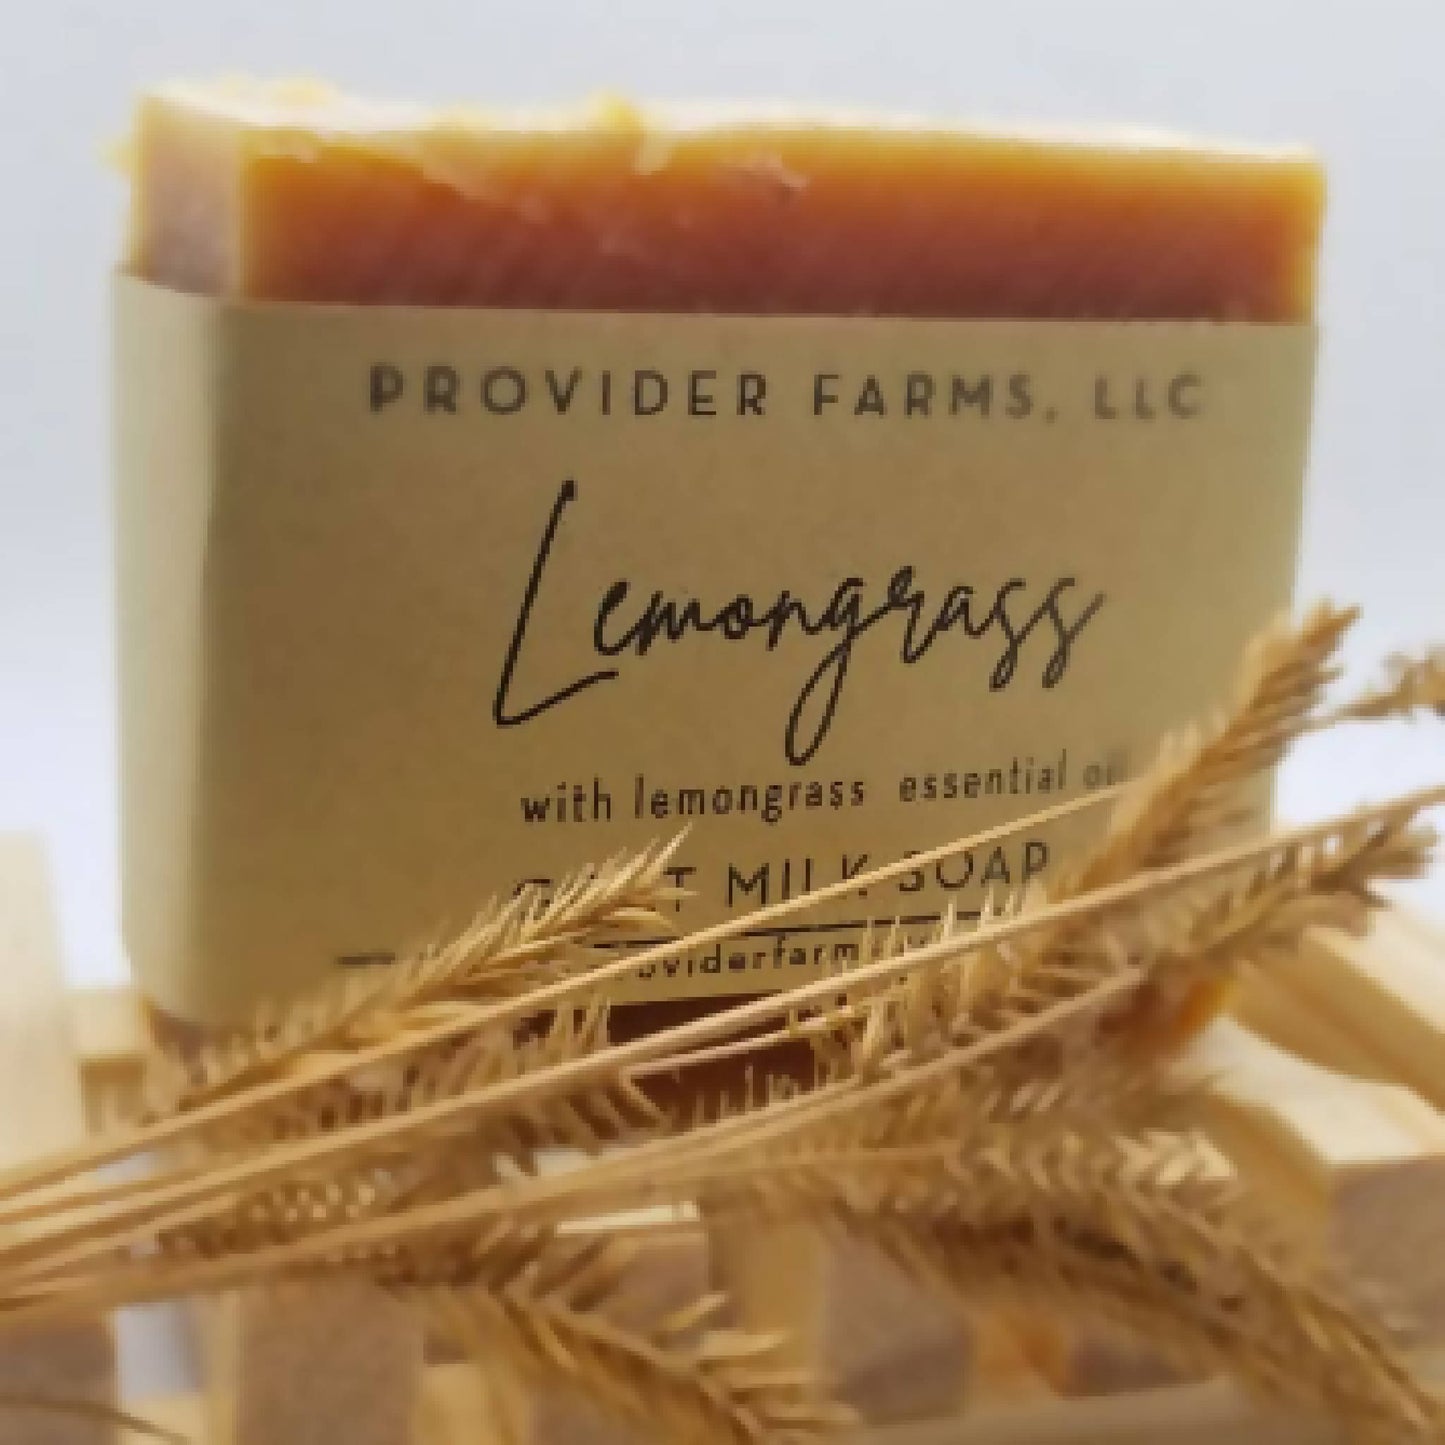 Lemongrass Goat Milk Soap